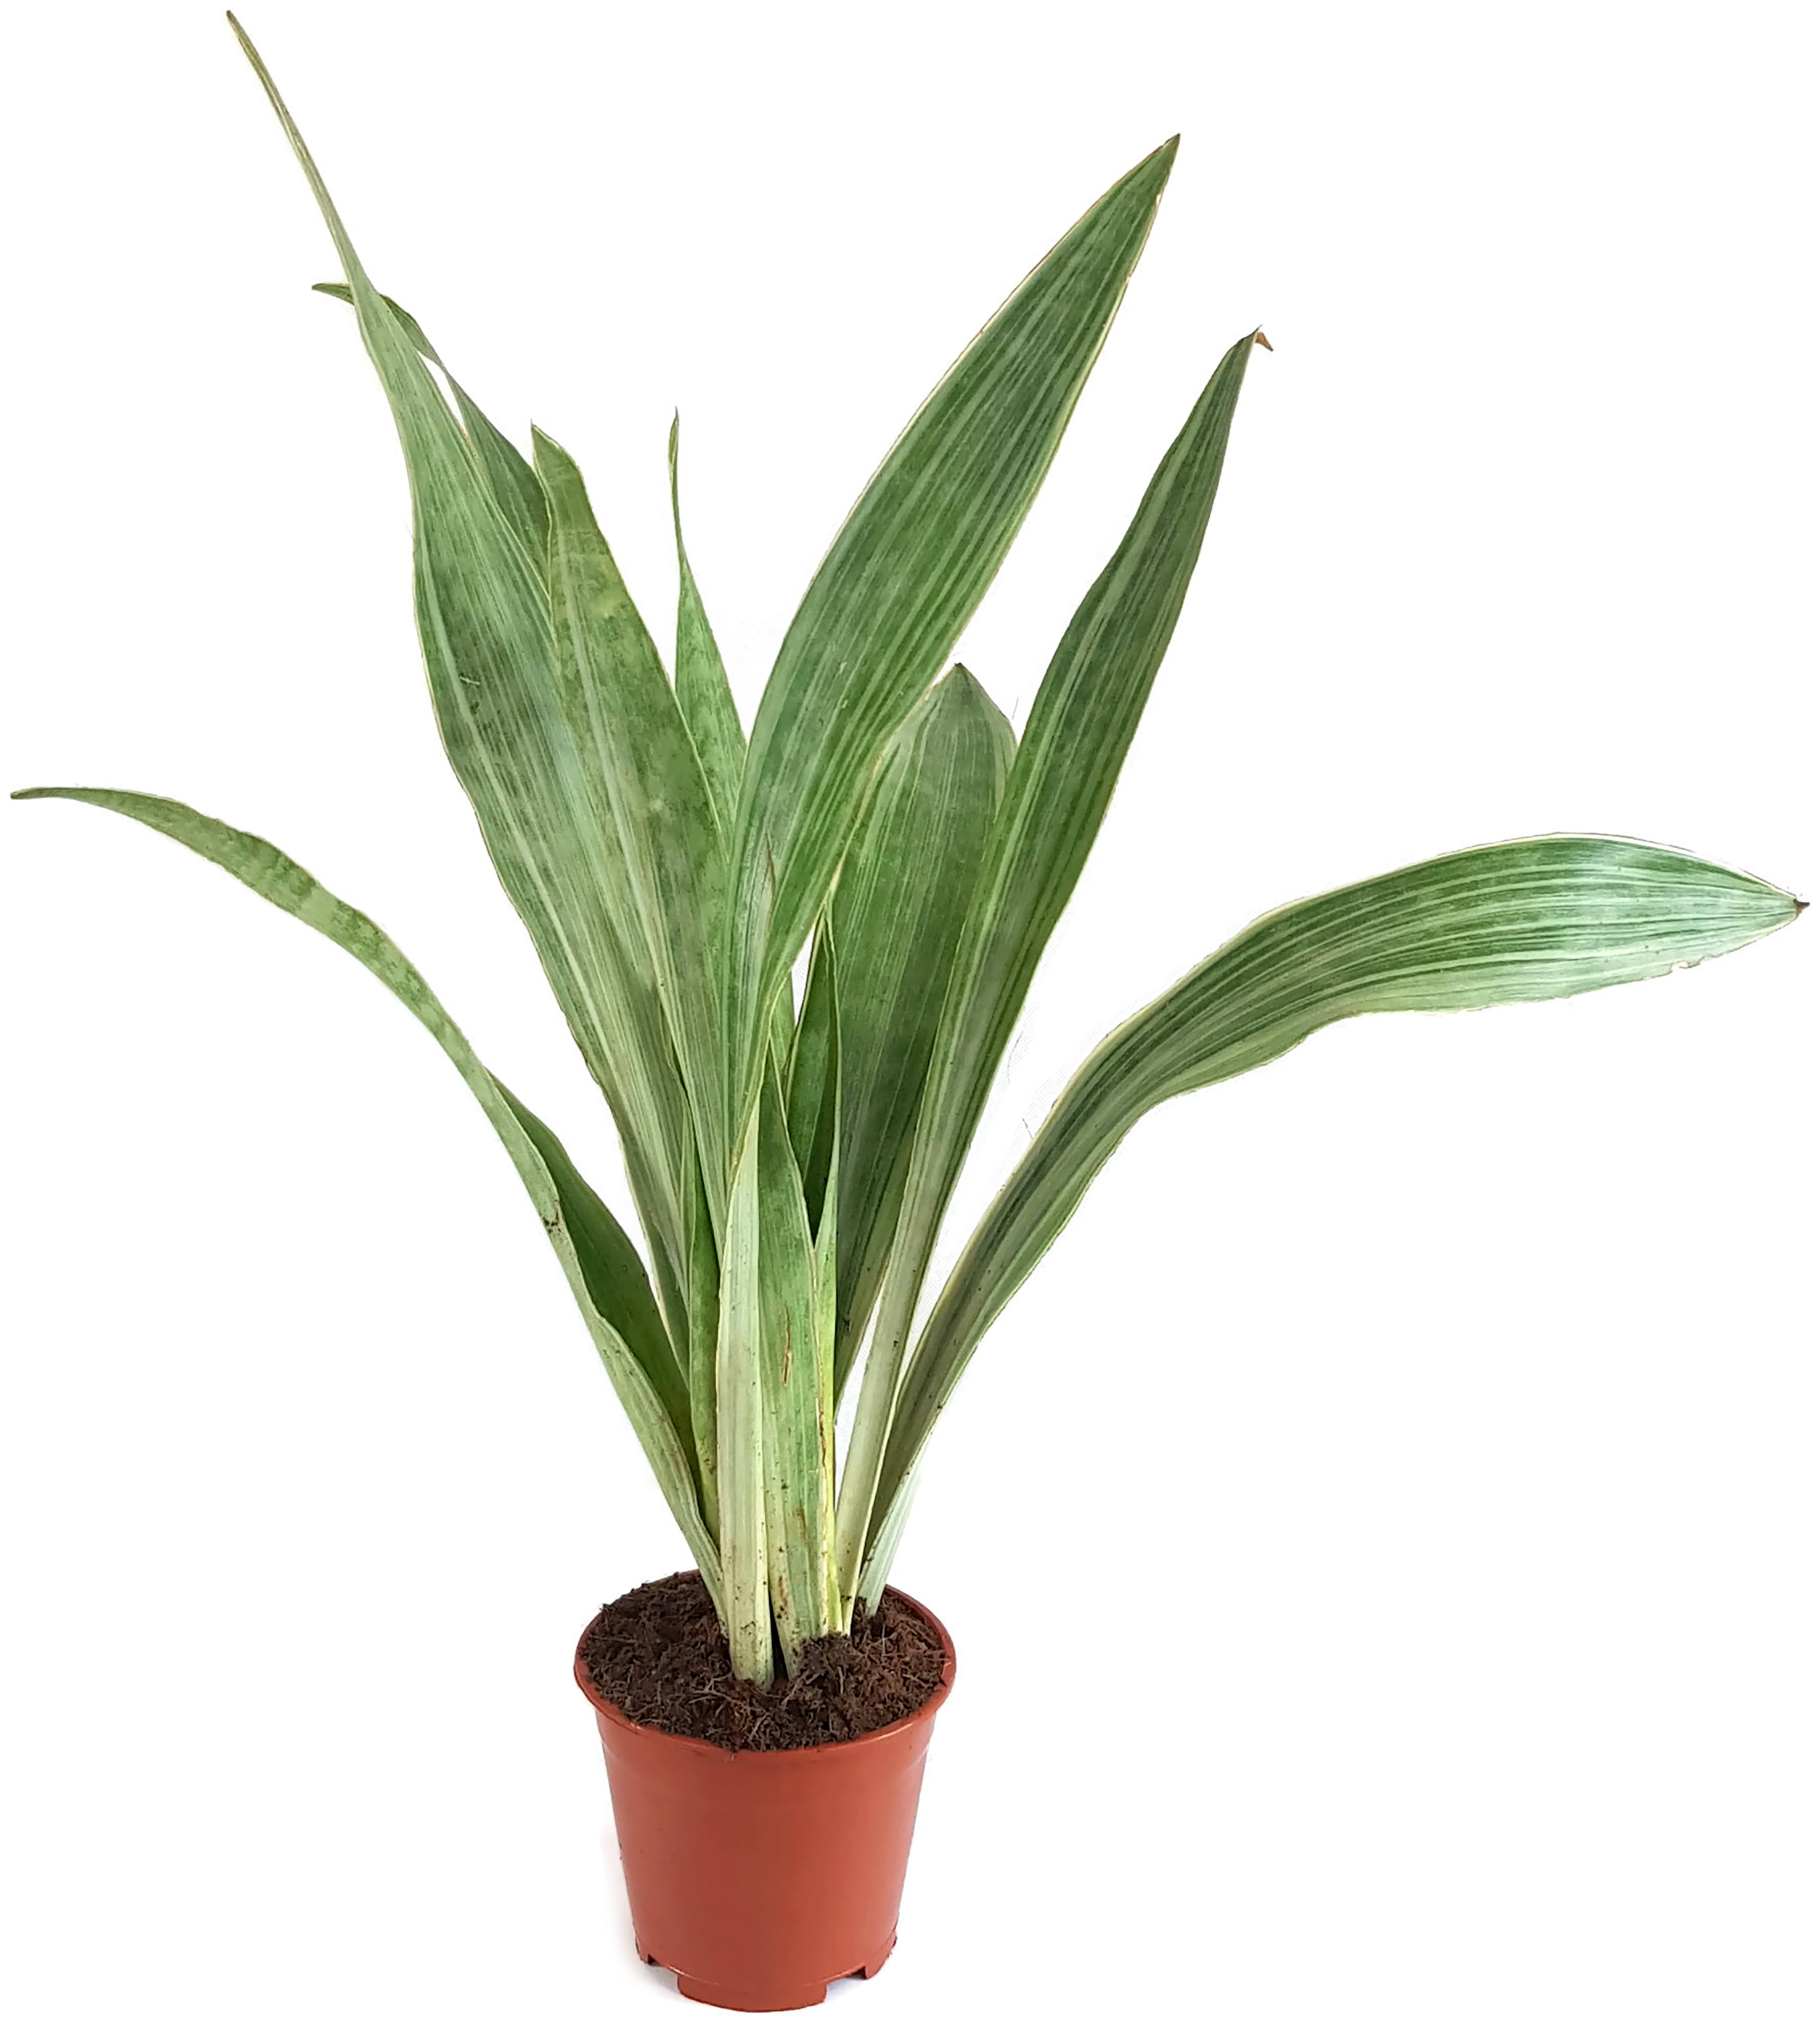 Fangblatt robuste Zimmerpflanze luftreinigende Grünpflanze mit exquisiter Färbung Sansevieria Metallica perfekt für das Büro/Praxis 